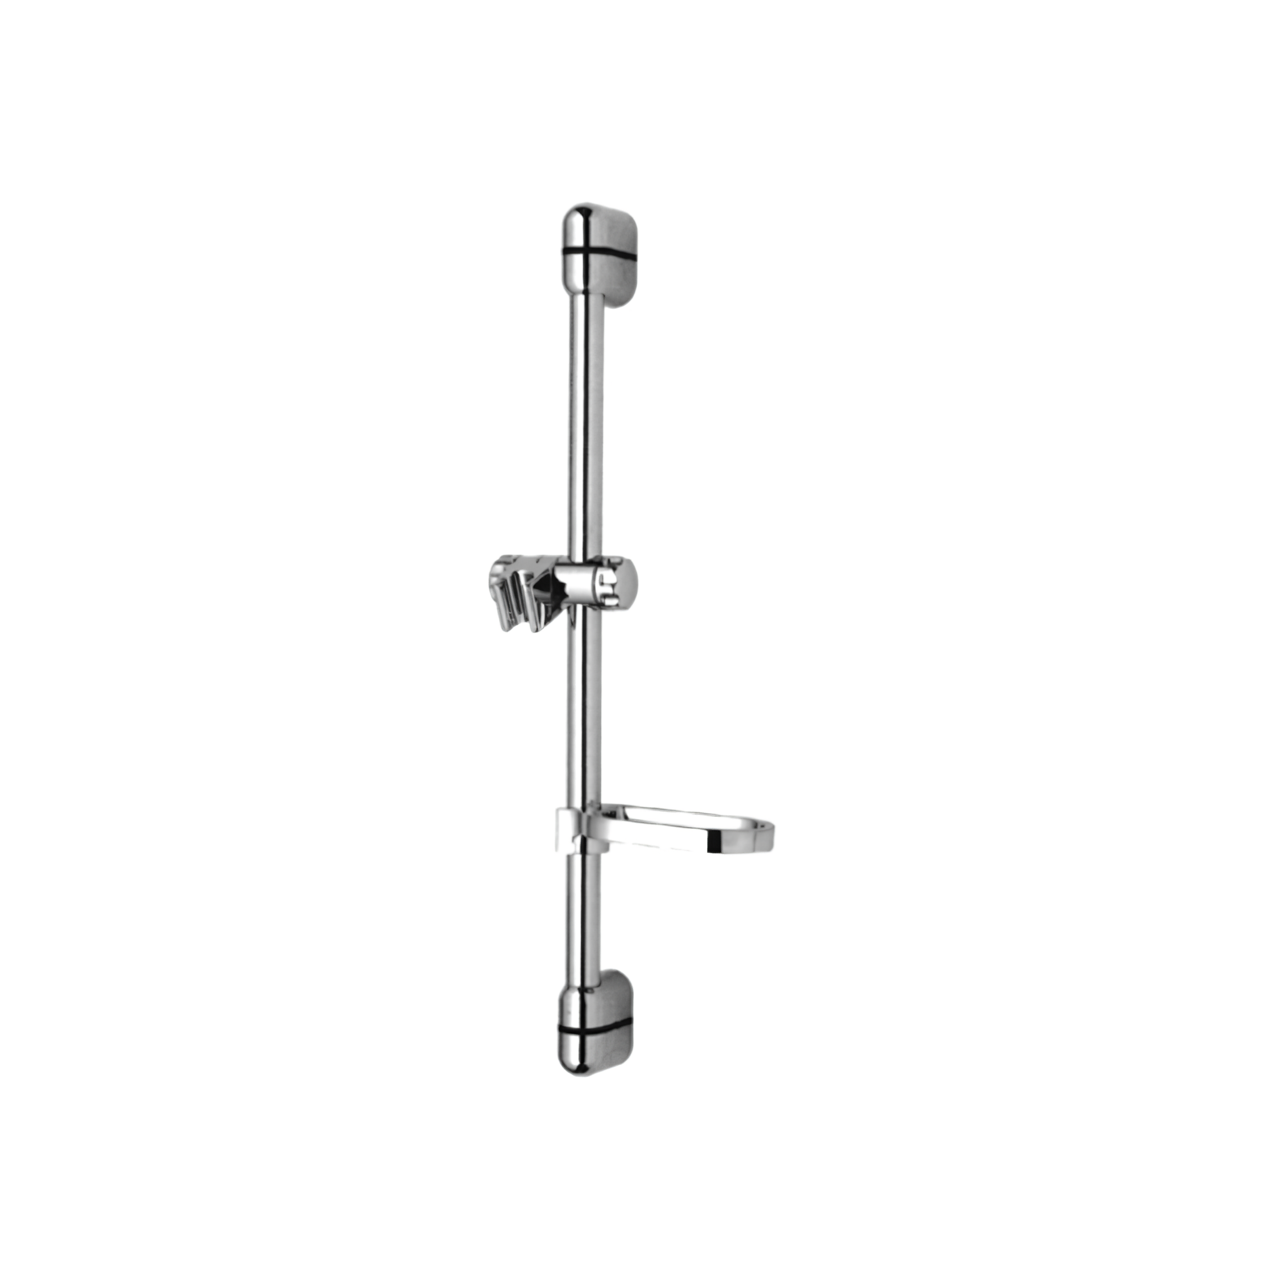 H109C Slide Bar Wall Mount Bathroom Slide Bar and Holder with Adjustable Handheld Shower Head Holder Polished Chrome Shower Sliding Bar